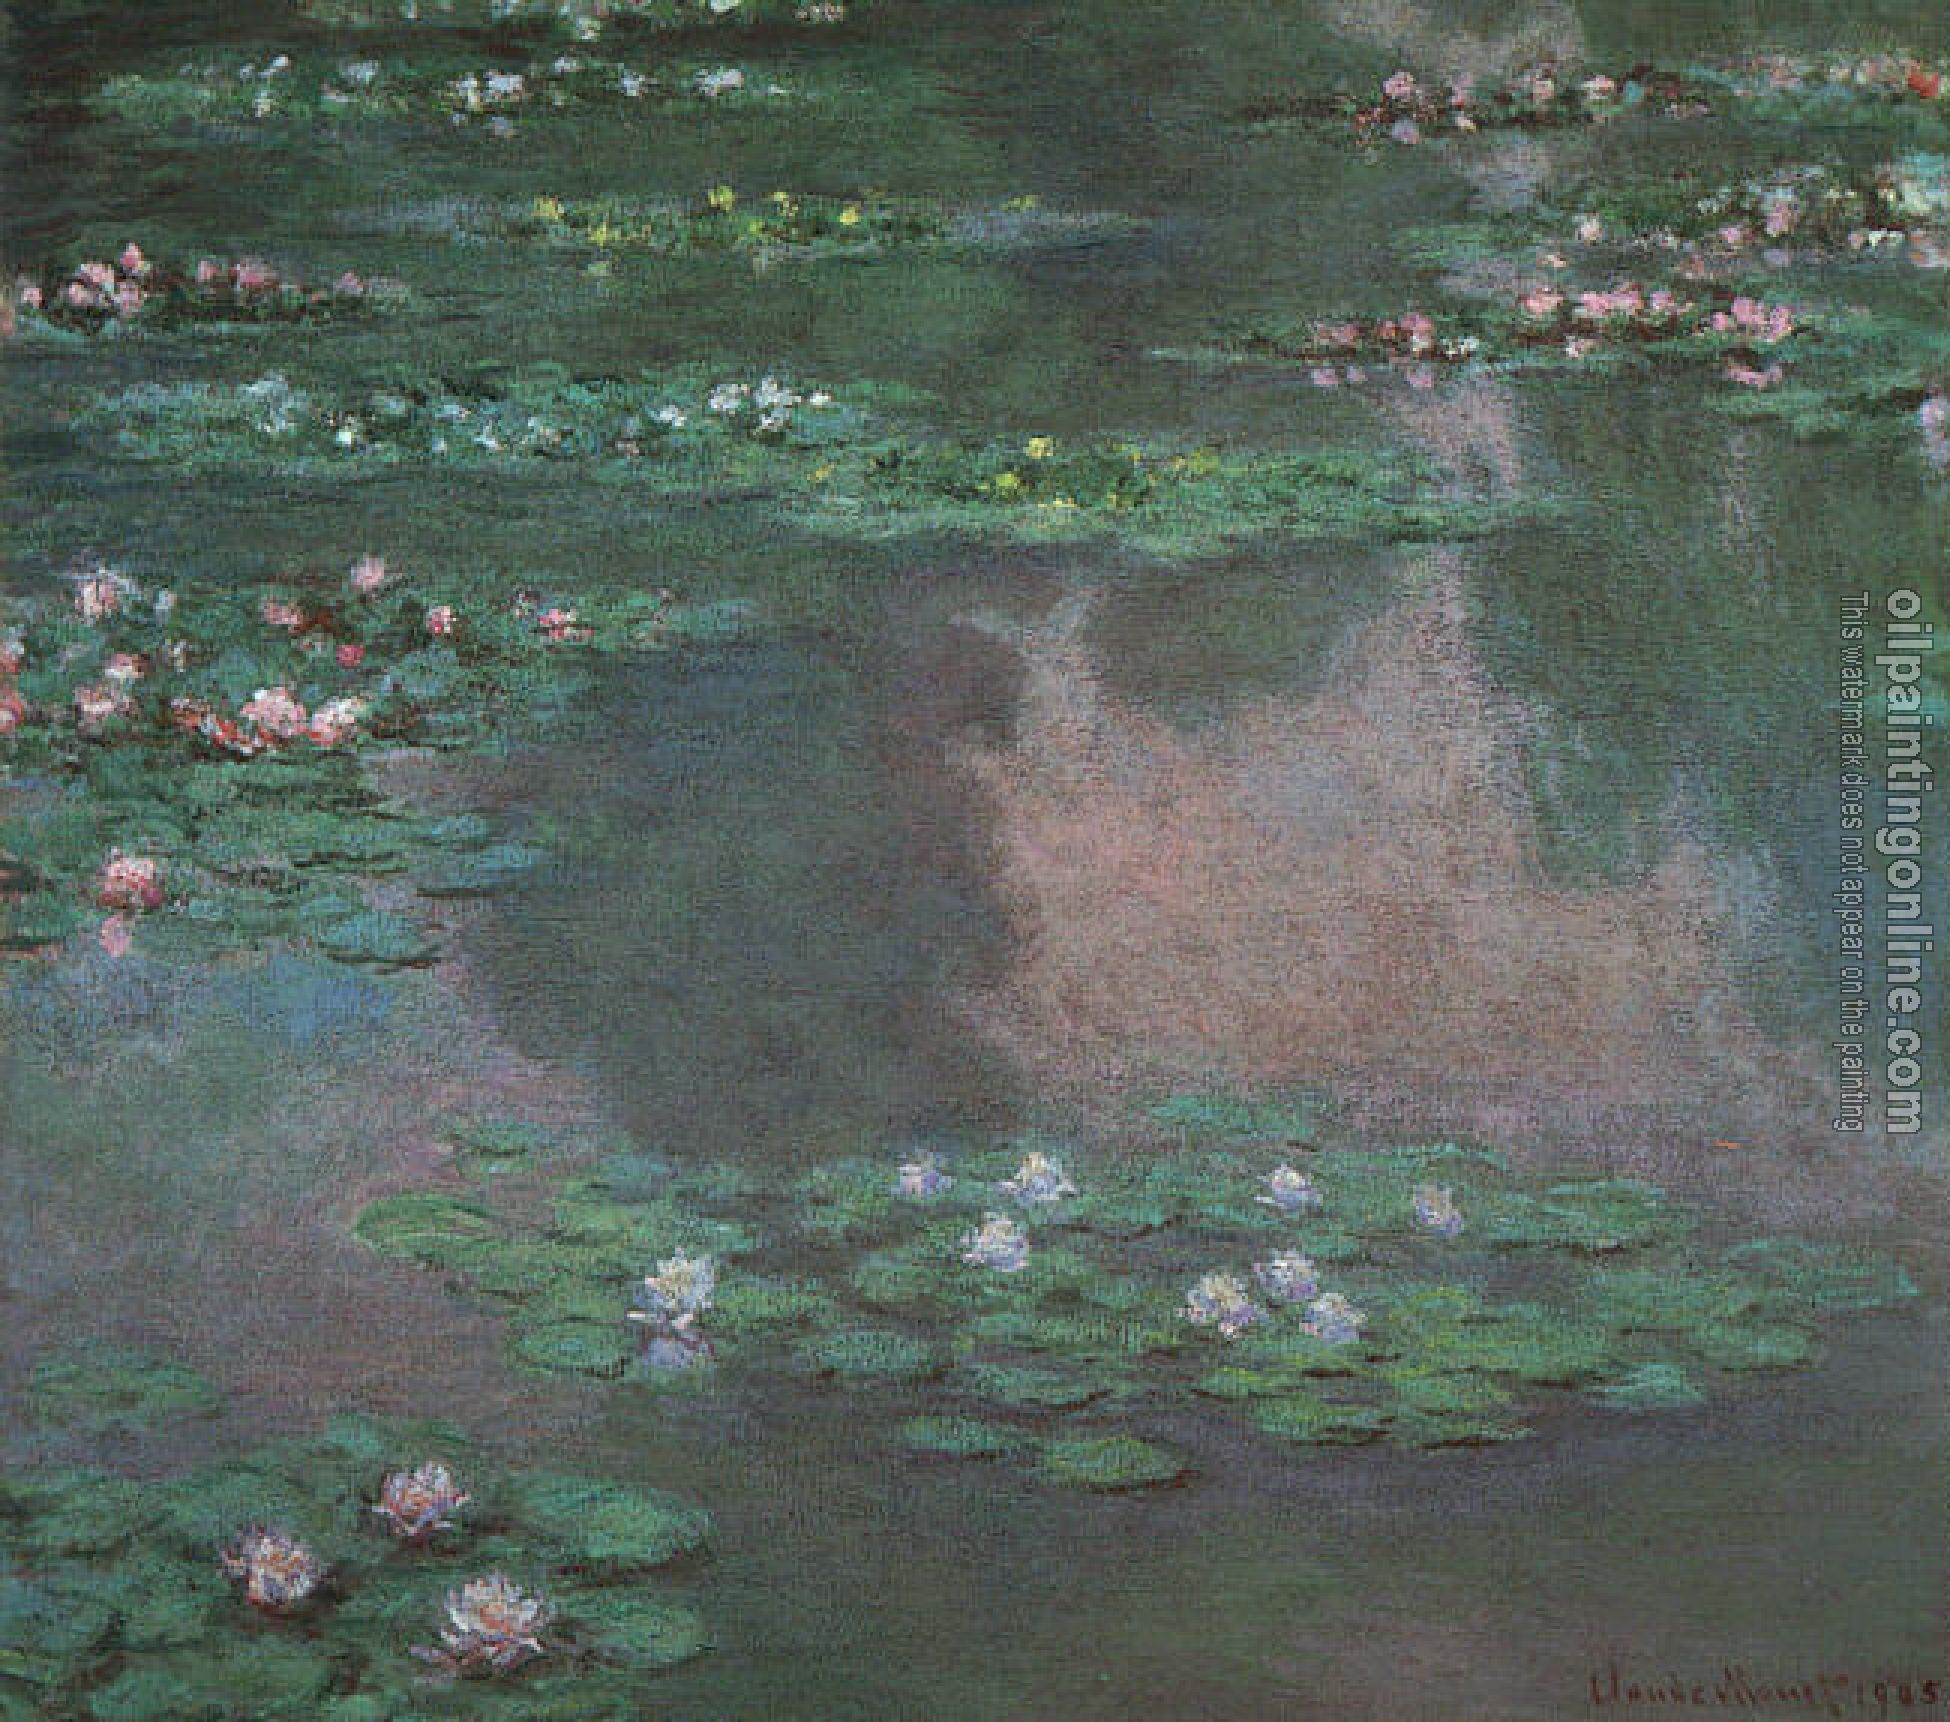 Monet, Claude Oscar - Water Lillies I